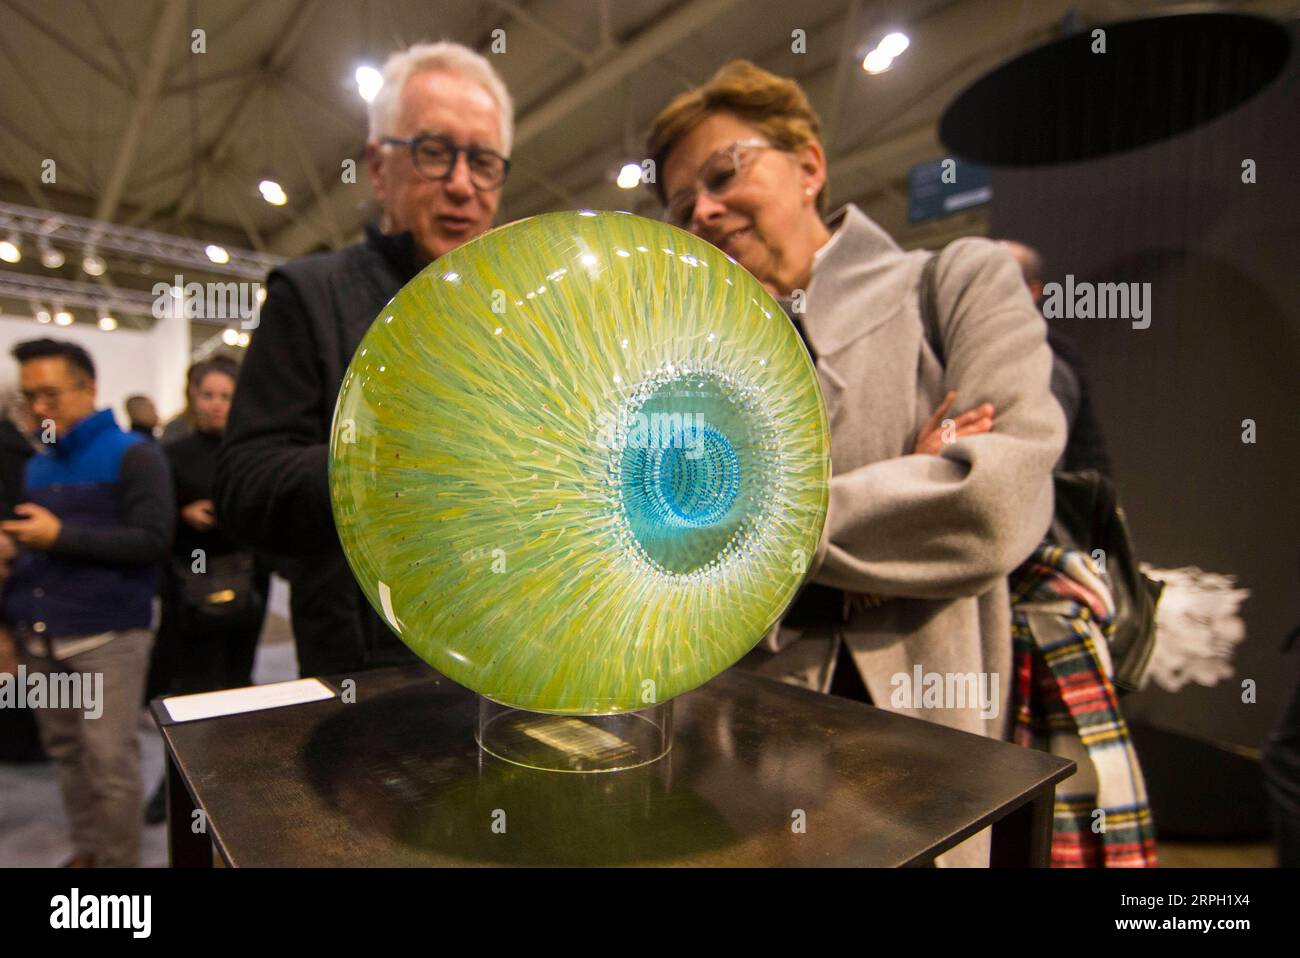 191026 -- TORONTO, 26 ottobre 2019 -- People look at the ArtWork Magic Eye during the 2019 Art Toronto in Toronto, Canada, on Oct. 26, 2019. Presentando opere di oltre 100 gallerie provenienti da tutto il Canada e da tutto il mondo, questa fiera annuale di tre giorni si è tenuta qui dal venerdì alla domenica per attirare decine di migliaia di collezionisti d'arte, professionisti e appassionati. Foto di /Xinhua CANADA-TORONTO-ART FAIR ZouxZheng PUBLICATIONxNOTxINxCHN Foto Stock